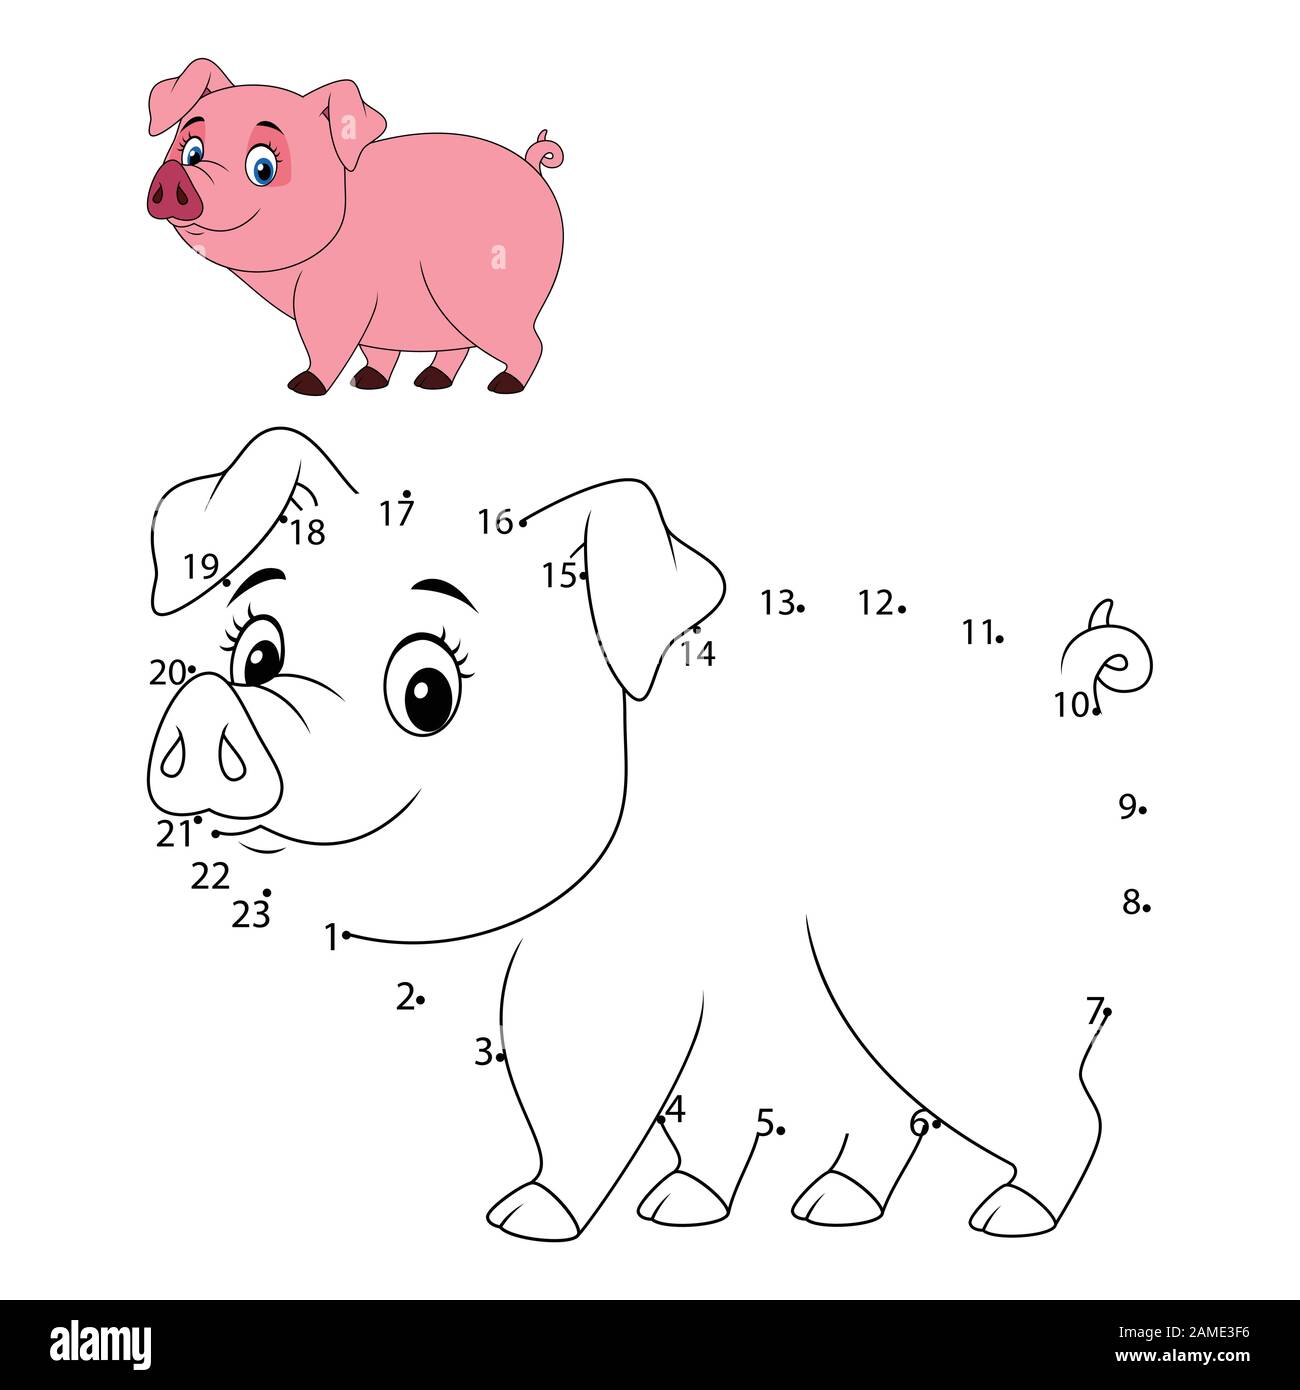 Conectar Los Puntos Por Números Para Dibujar Al Animal. Juego De